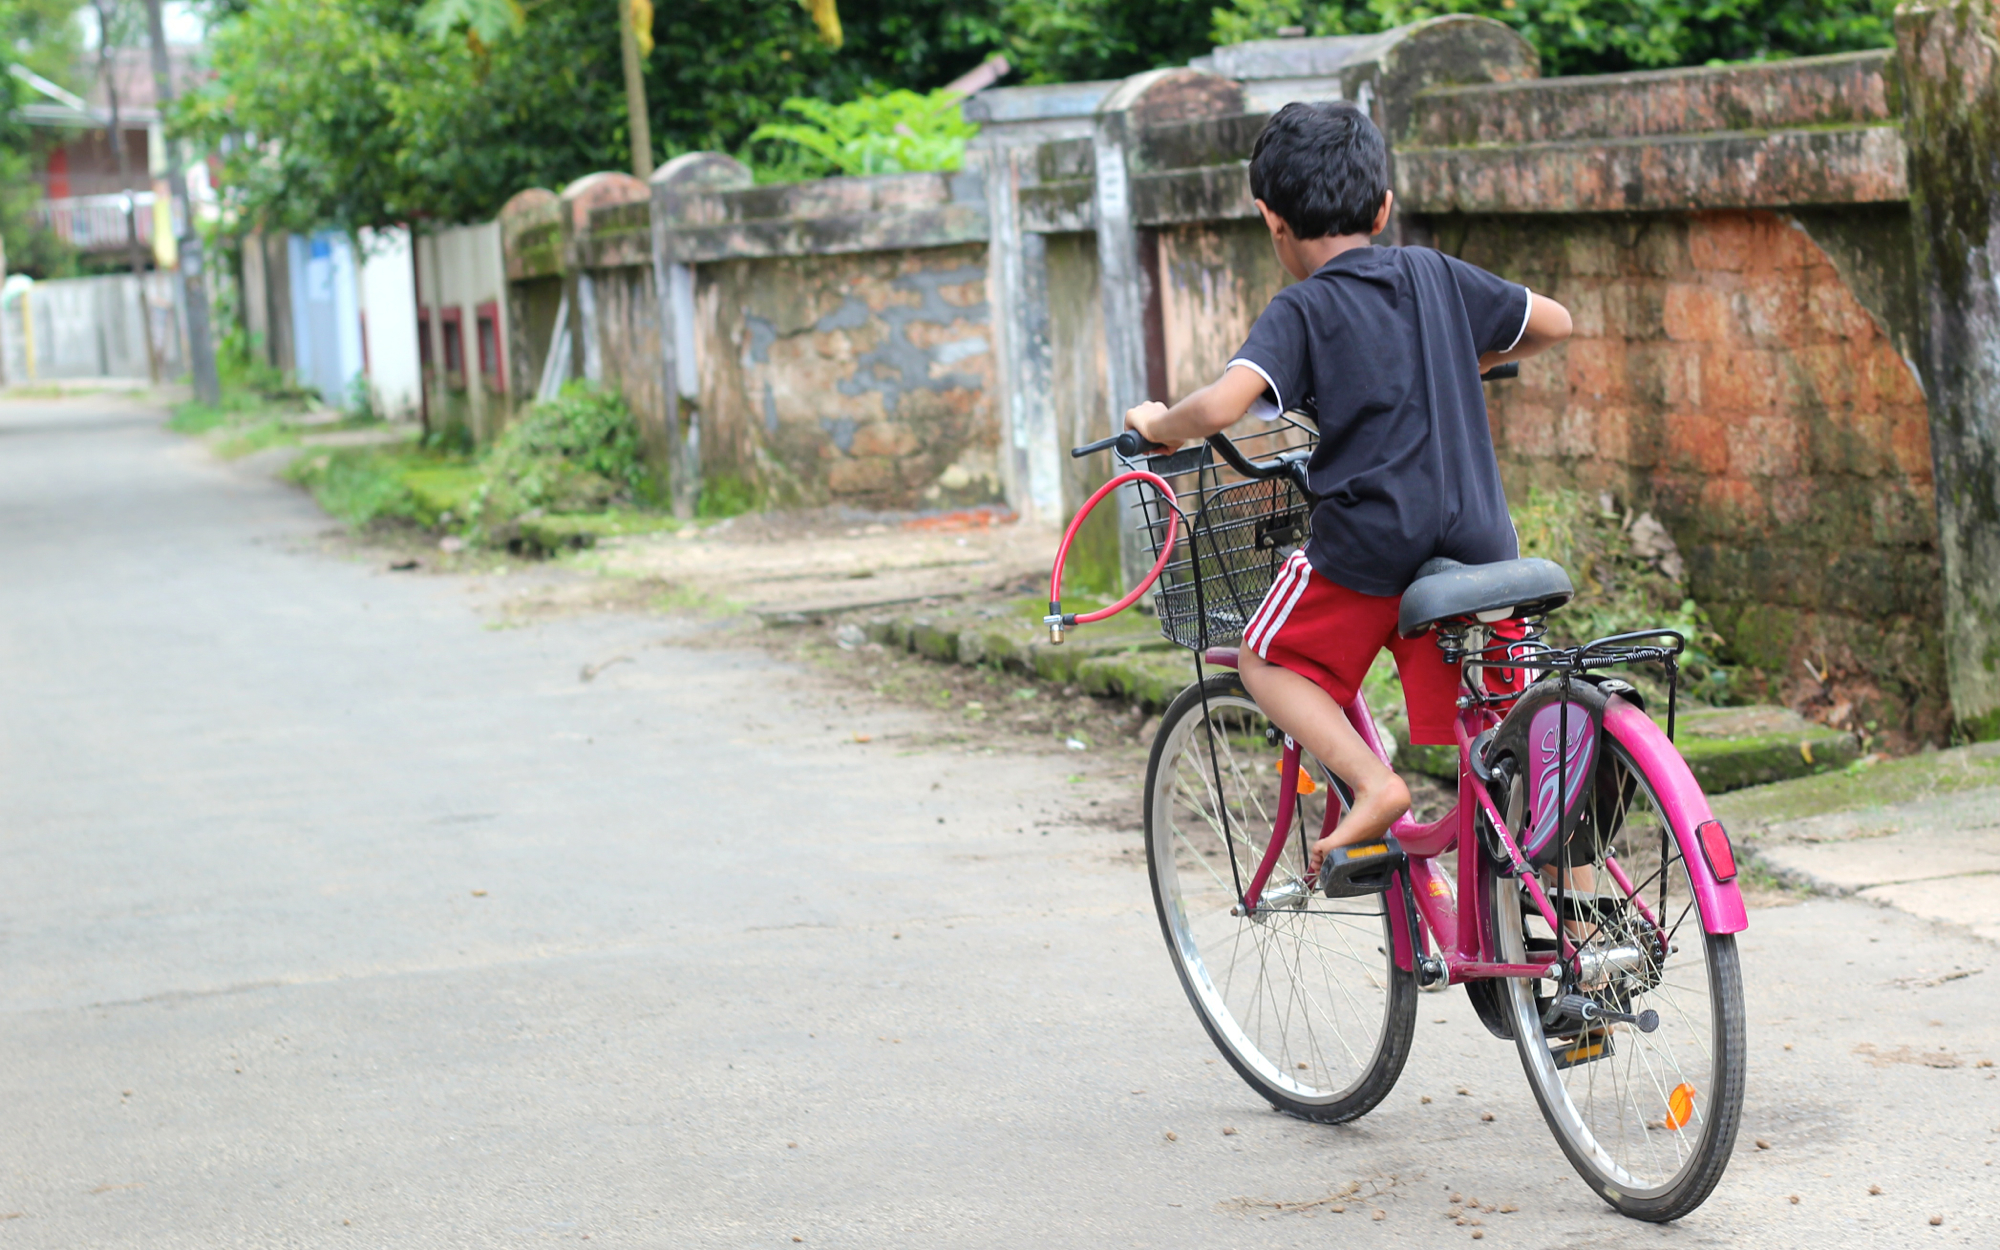 a boy riding a bike down a narrow road